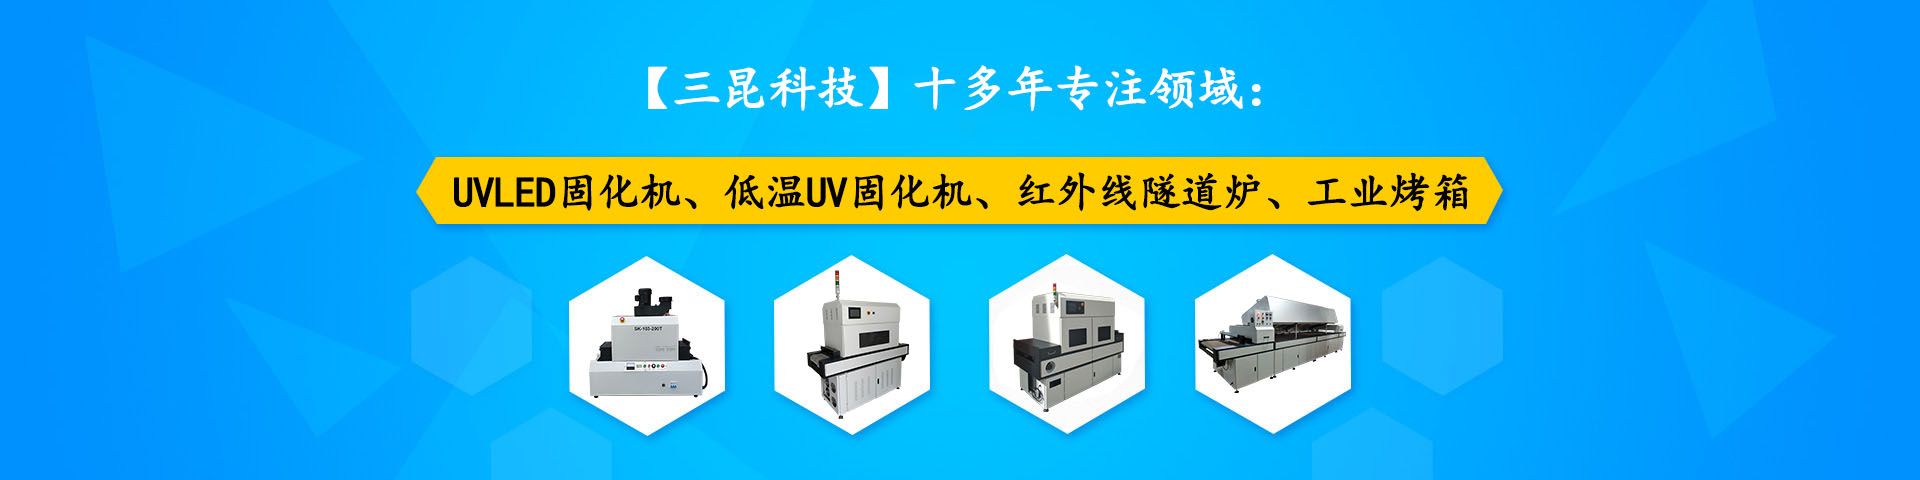 汞灯固化机-汞灯UV机-汞灯固化炉-汞灯固化设备-汞灯设备SK-506-600P